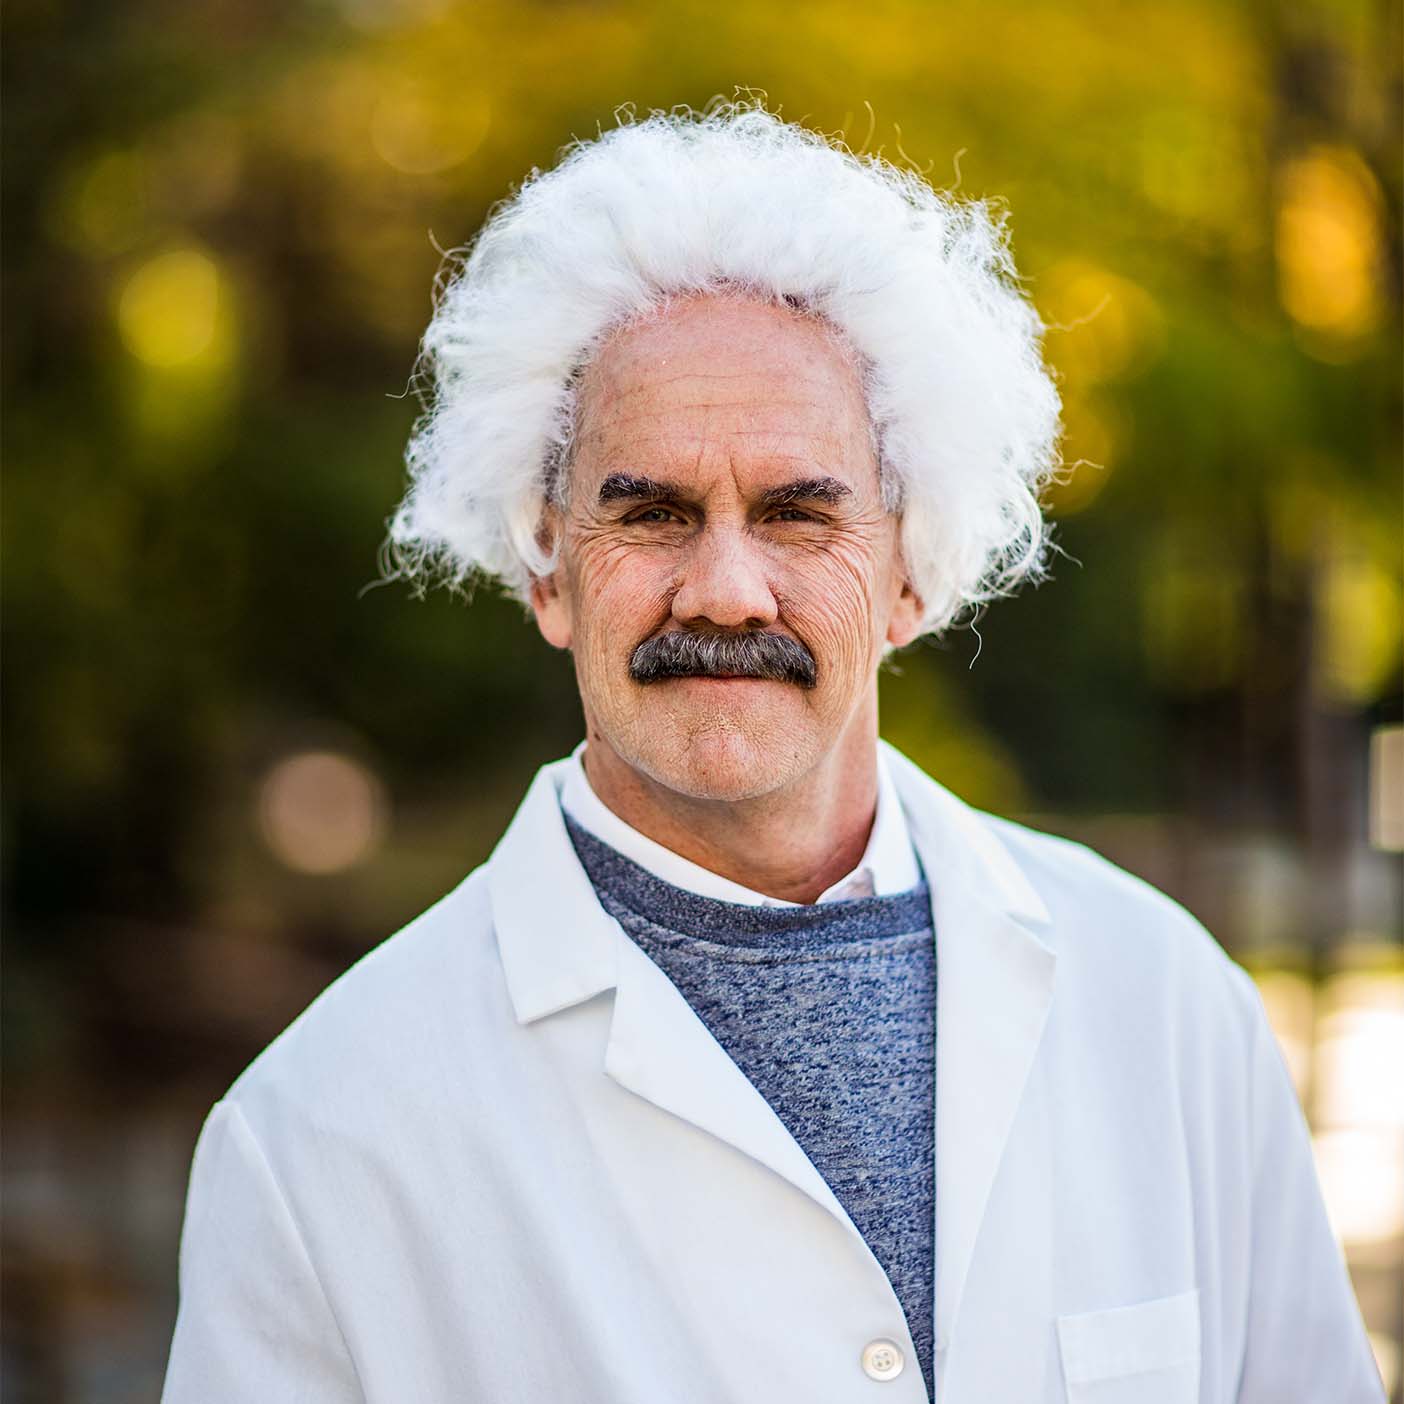 Tom Holmoe dressed up as Albert Einstein for Halloween.